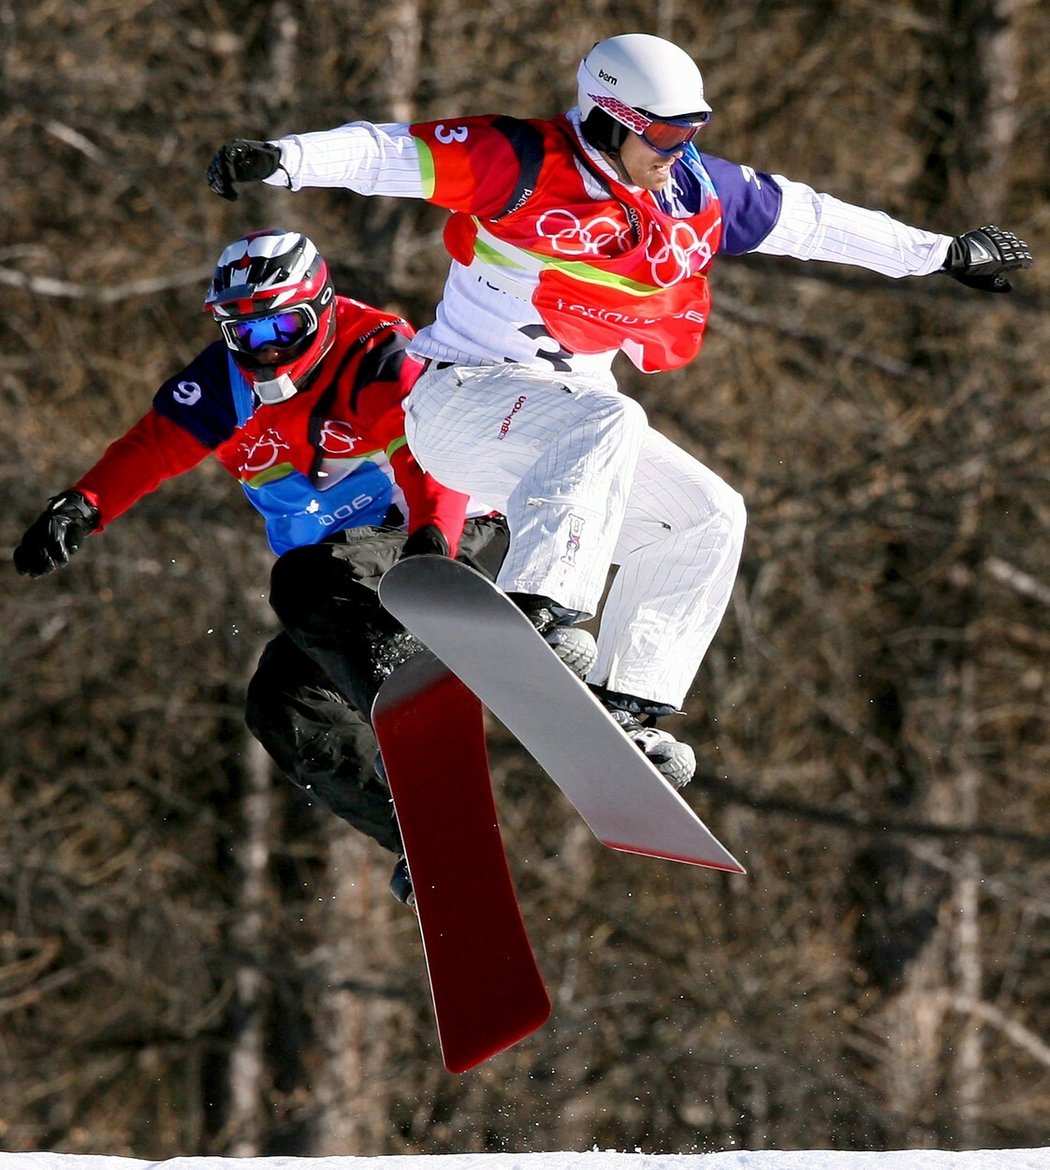 Slovenský snowboardista a olympijský medailista Radoslav Židek havaroval s letadlem. Naštěstí je mimo ohrožení života